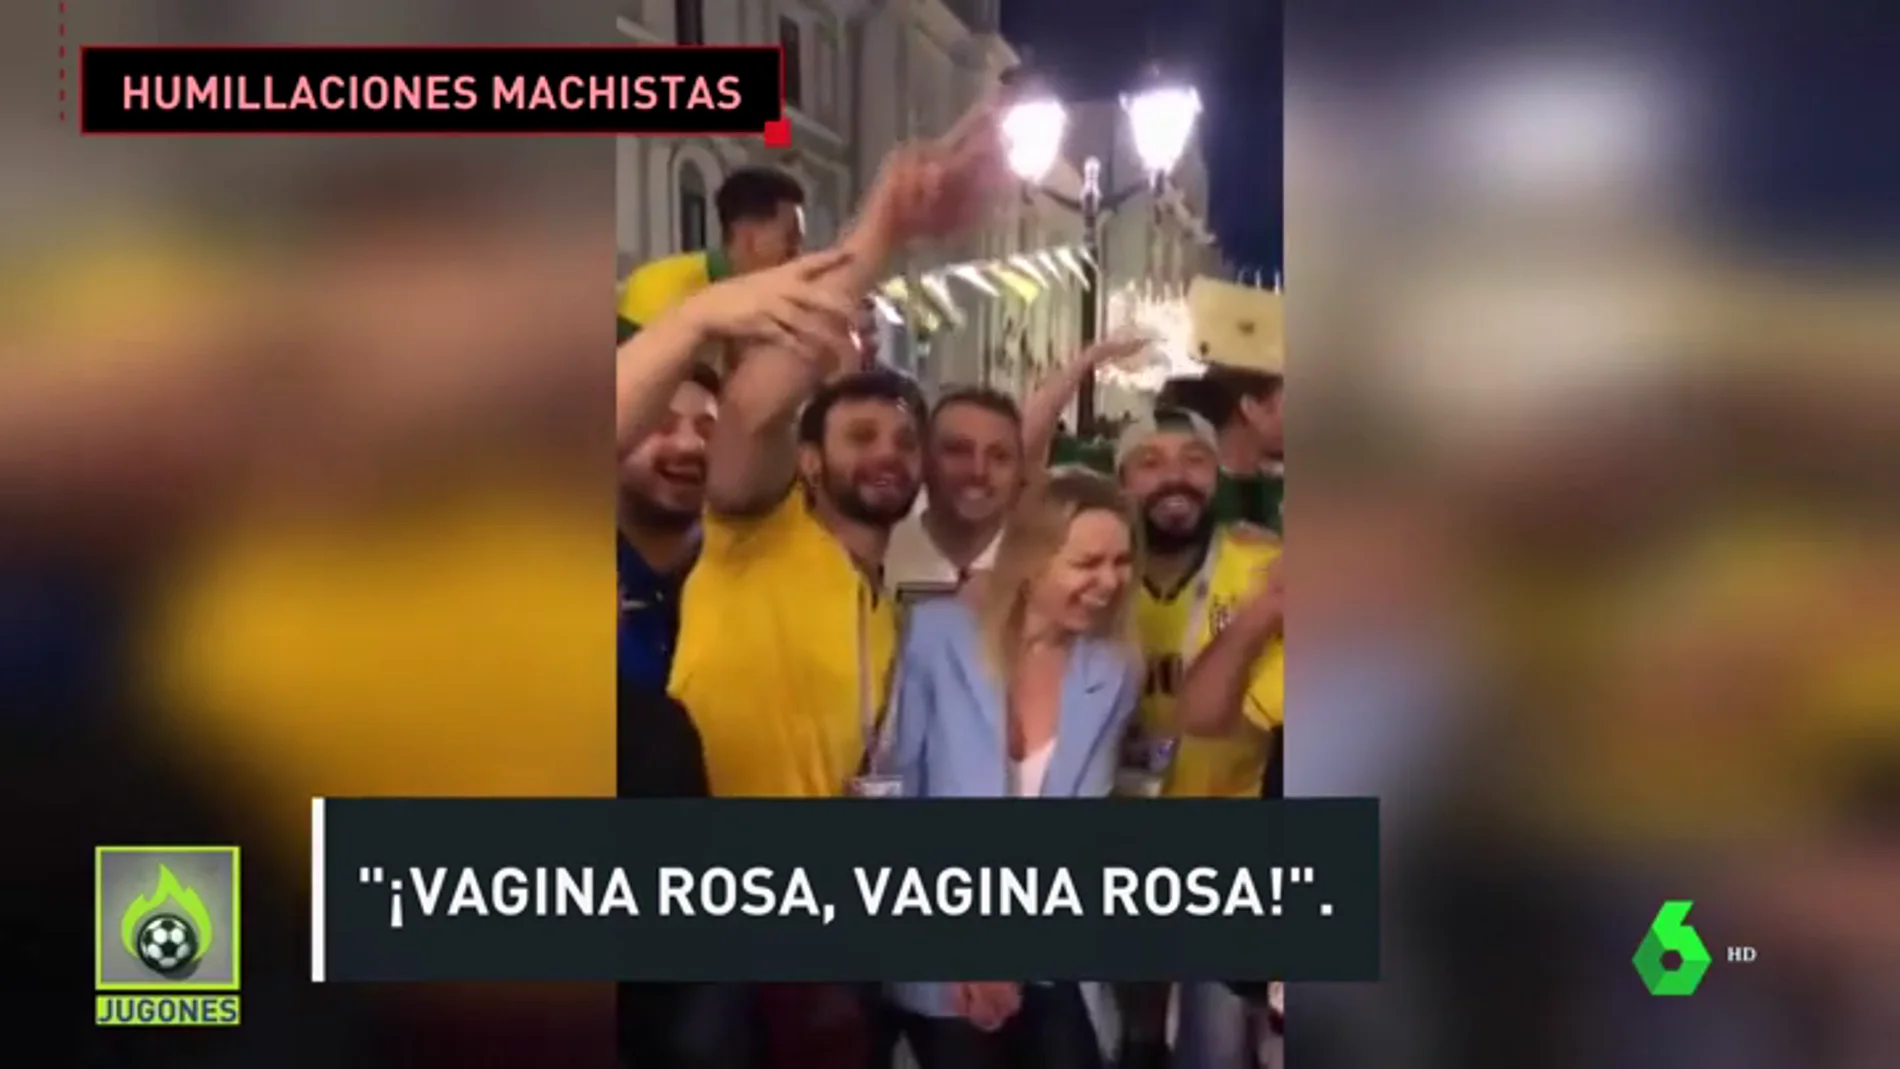 Polémica en Brasil por el trato de unos hinchas a una mujer rusa: "¡Vagina rosa!"